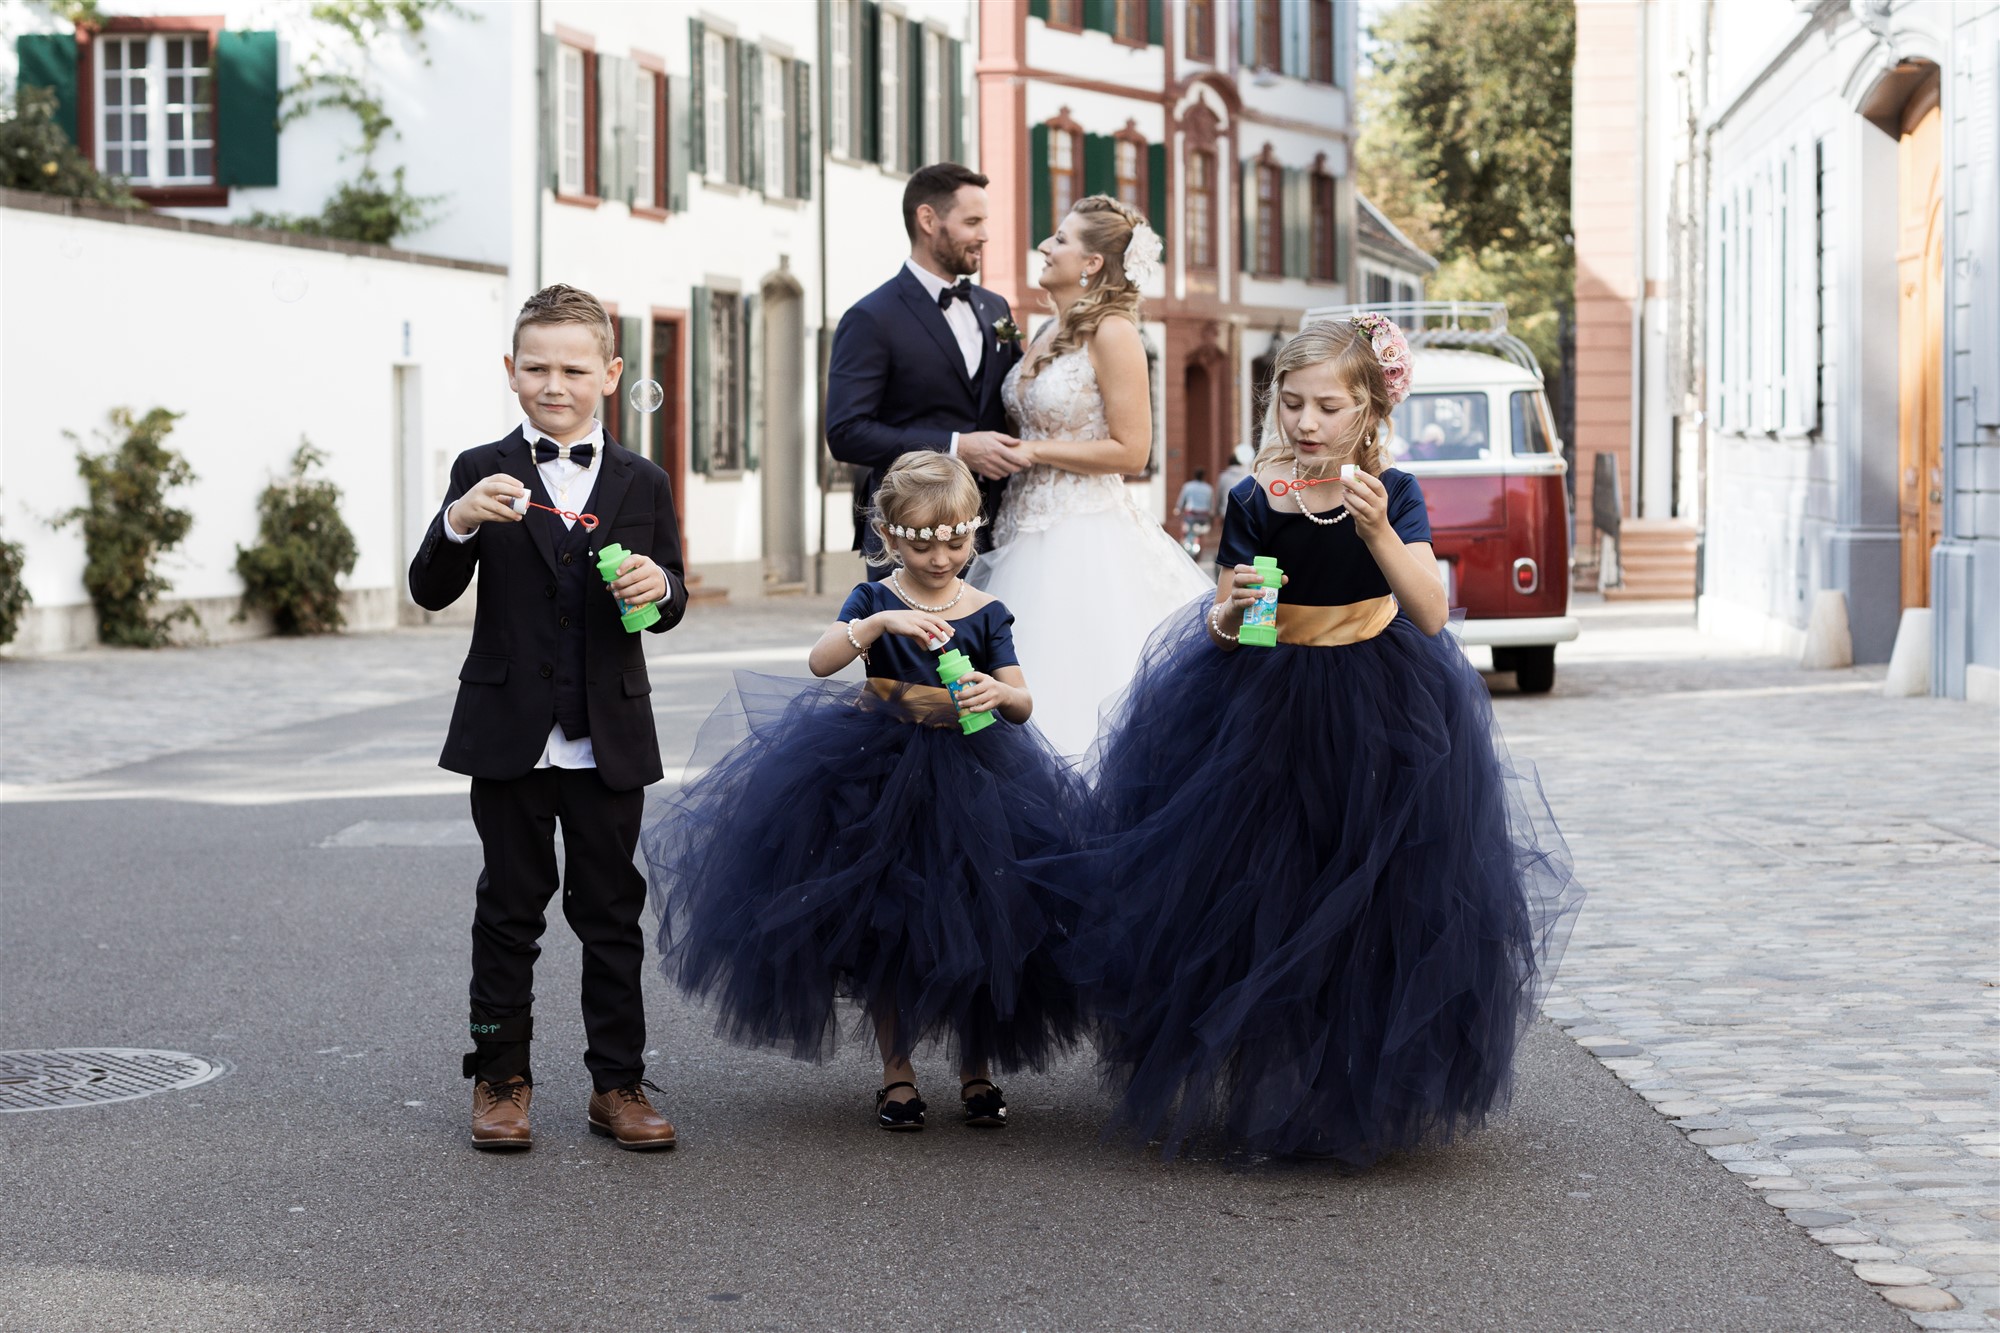 Brautpaar Fotoshooting mit Kinder und Seifenblasen